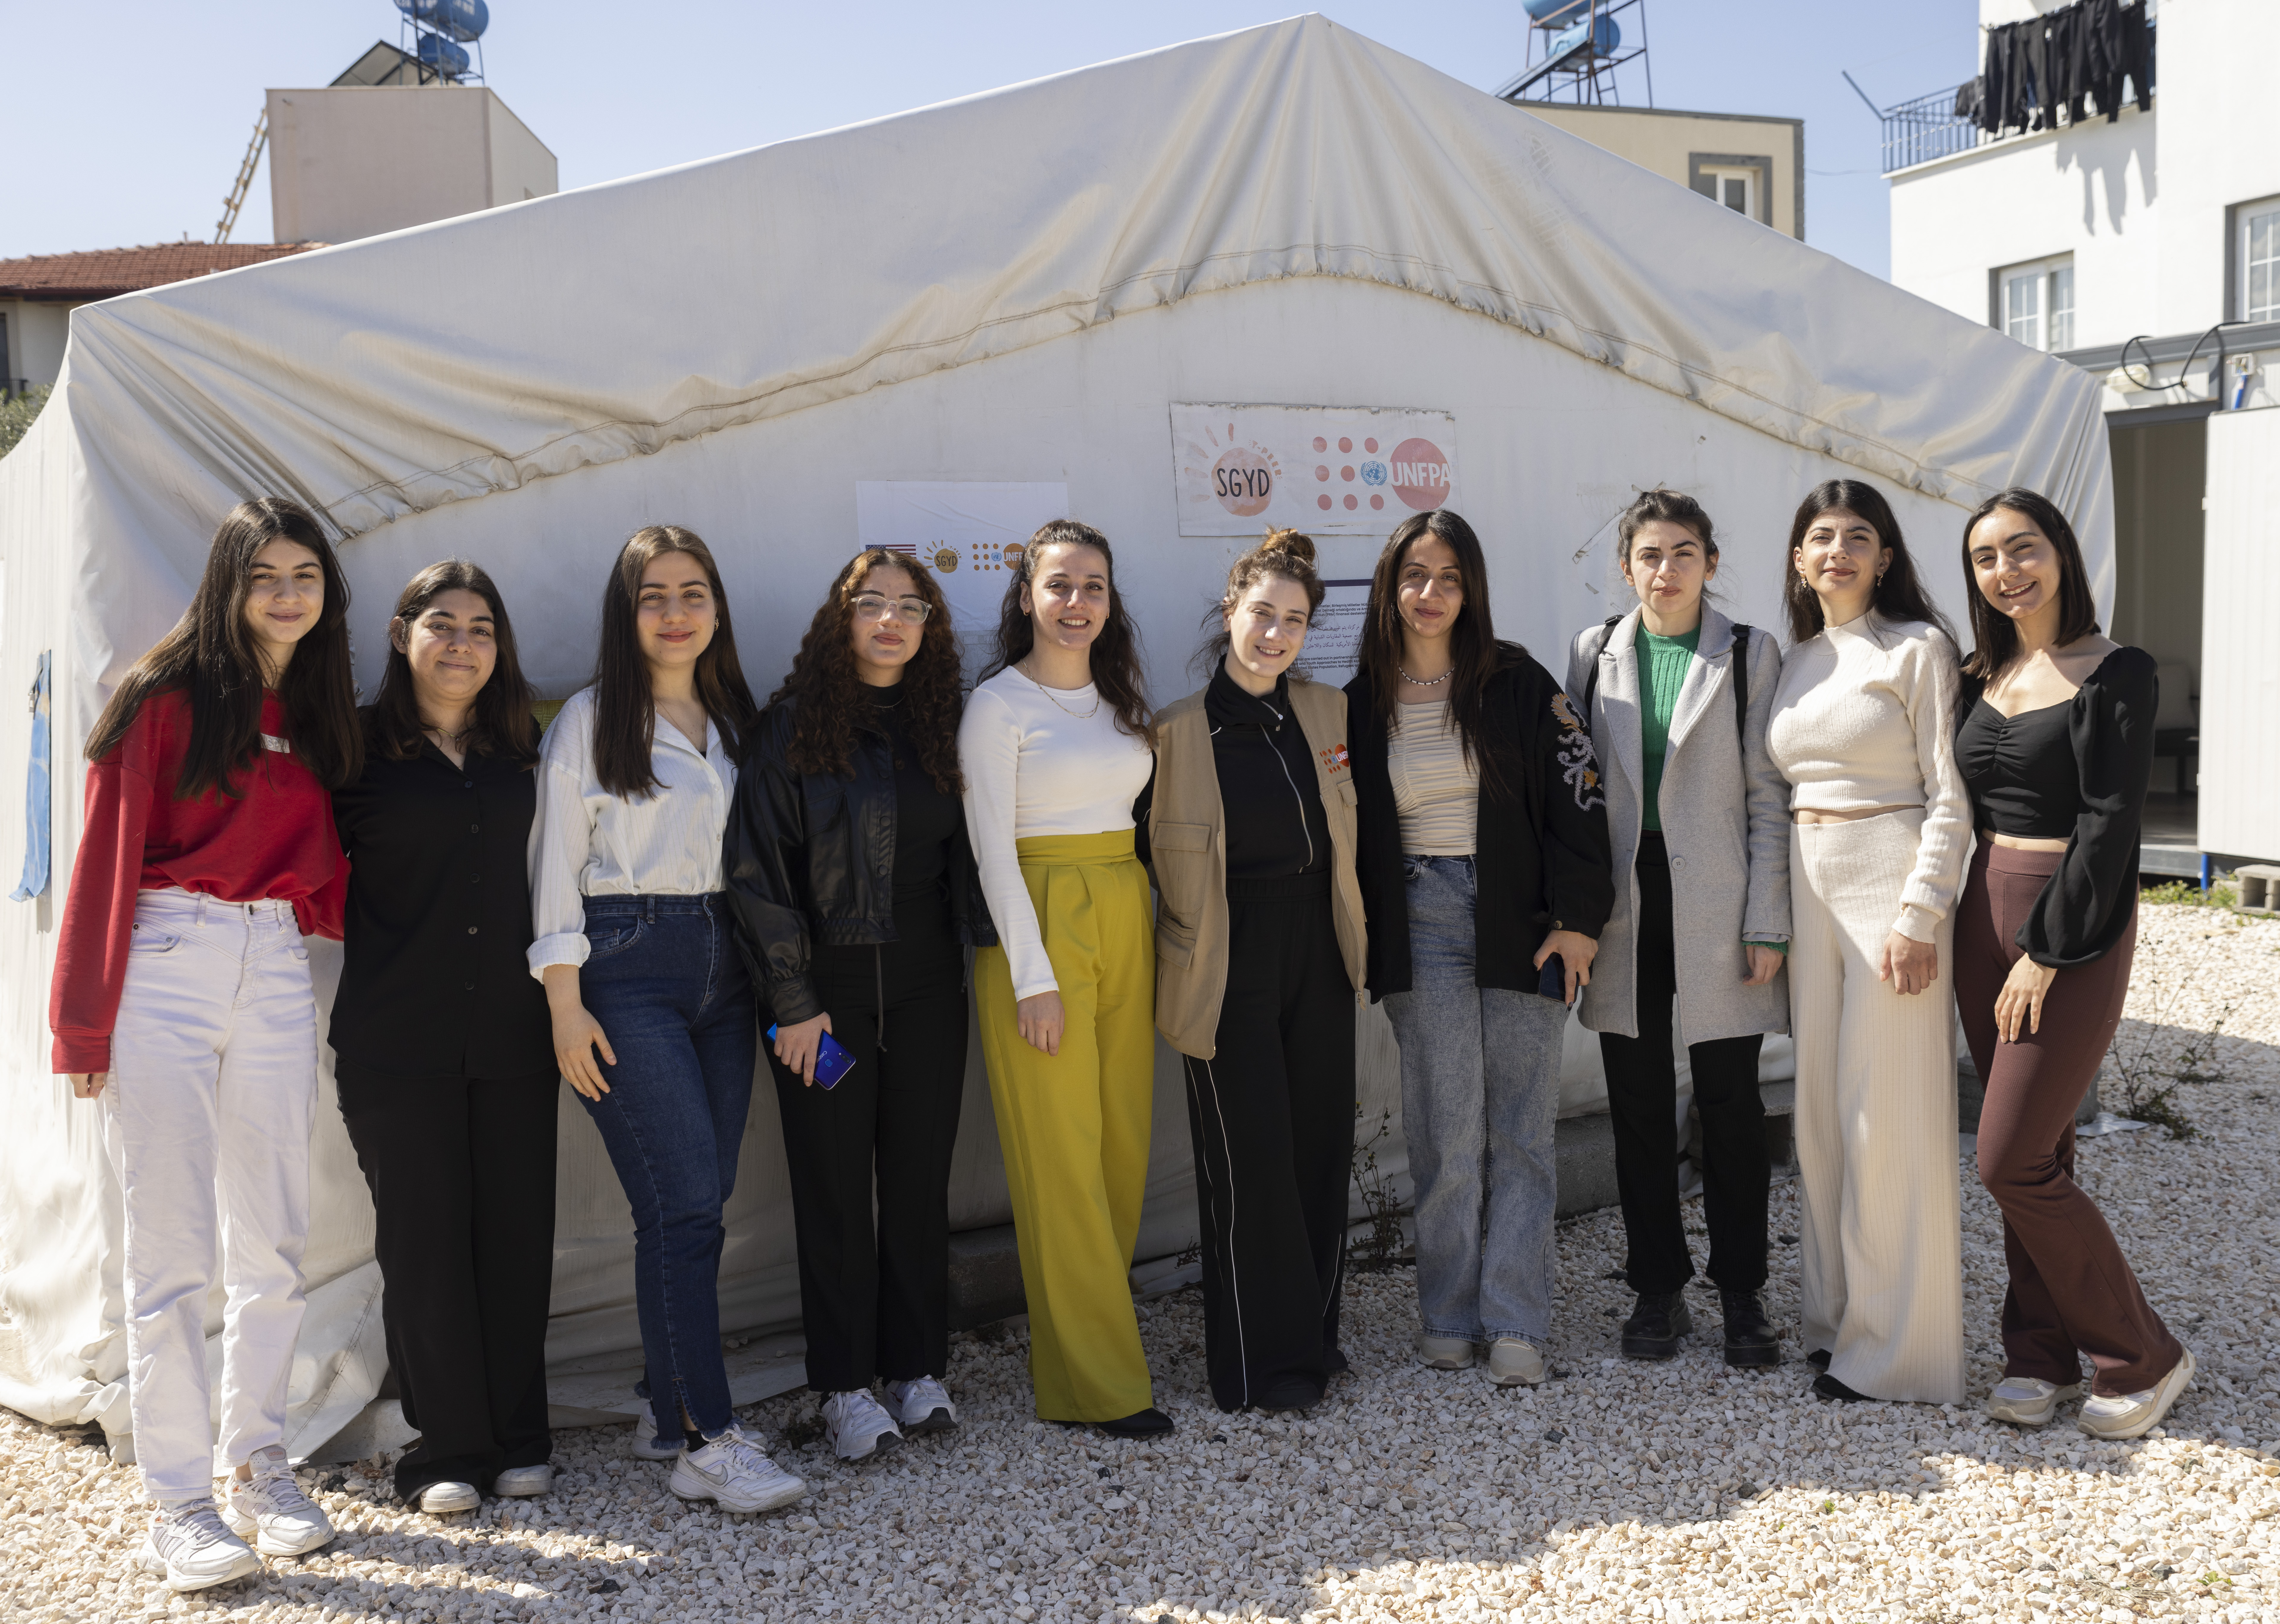 UNFPA Türkiye İyi niyet elçisi Hazal Kaya, bir grup genç kadınla birlikte Hatay Samandağ’daki Gençlik Merkezi önünde poz vermektedir. Arkalarında UNFPA, SGYD ve State PRM logosu görünmektedir.